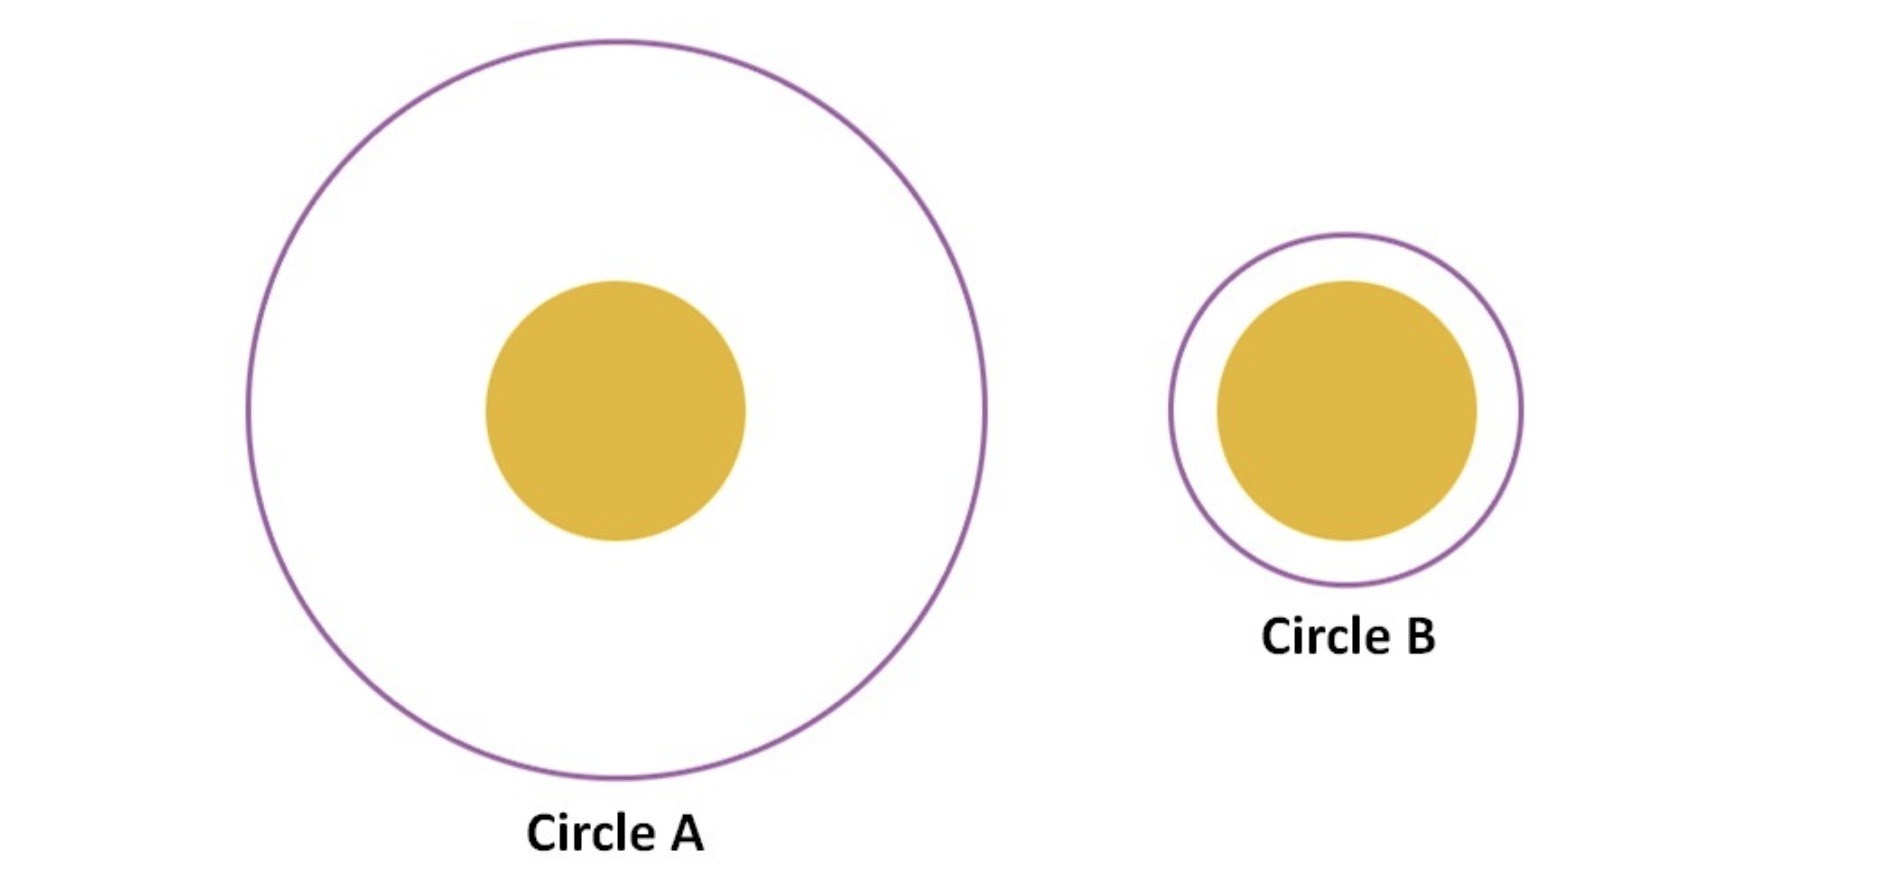 Ilusão de ótica dos círculos 